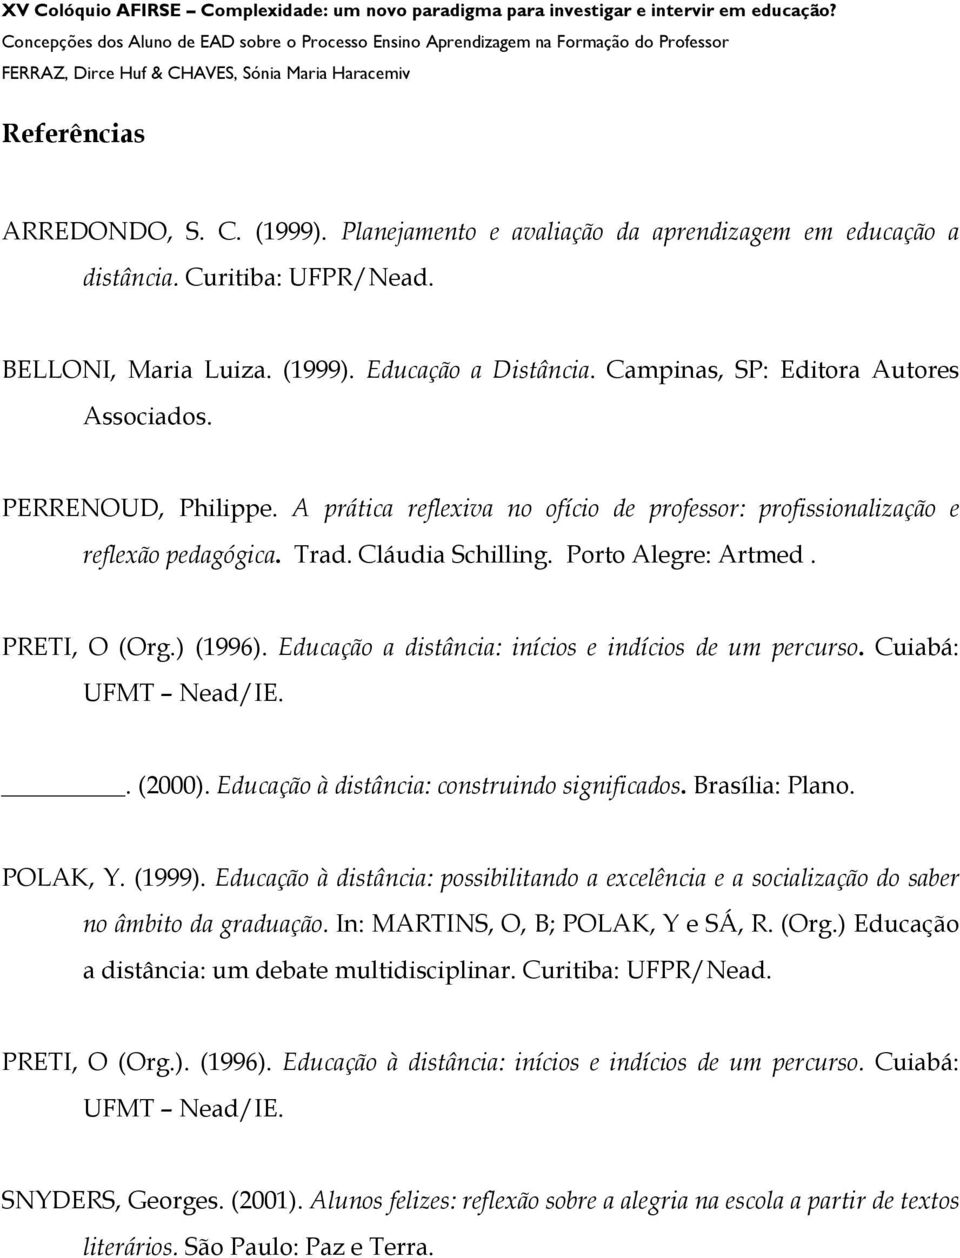 PRETI, O (Org.) (1996). Educação a distância: inícios e indícios de um percurso. Cuiabá: UFMT Nead/IE.. (2000). Educação à distância: construindo significados. Brasília: Plano. POLAK, Y. (1999).